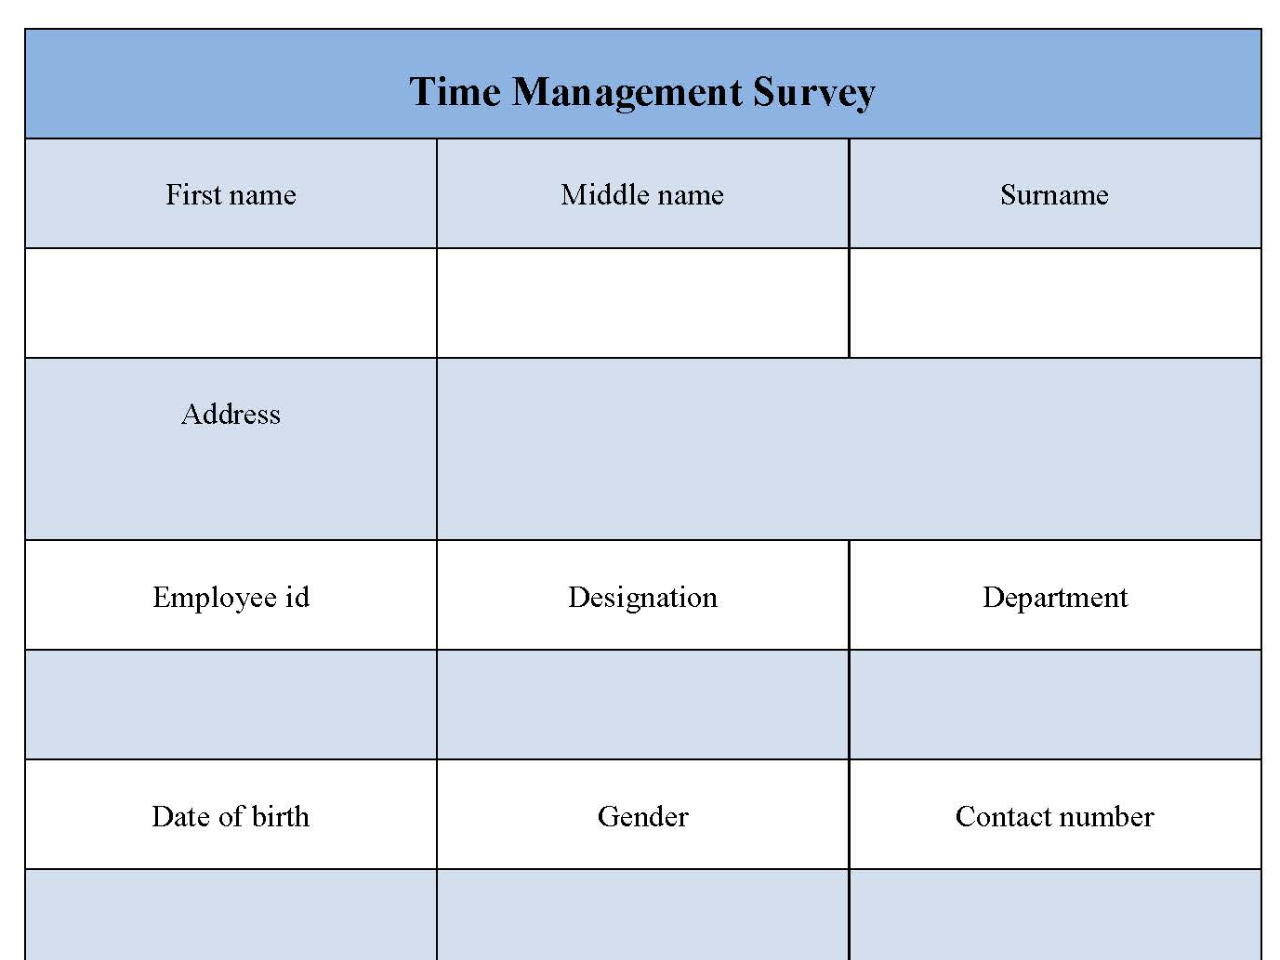 Time Management Survey Form